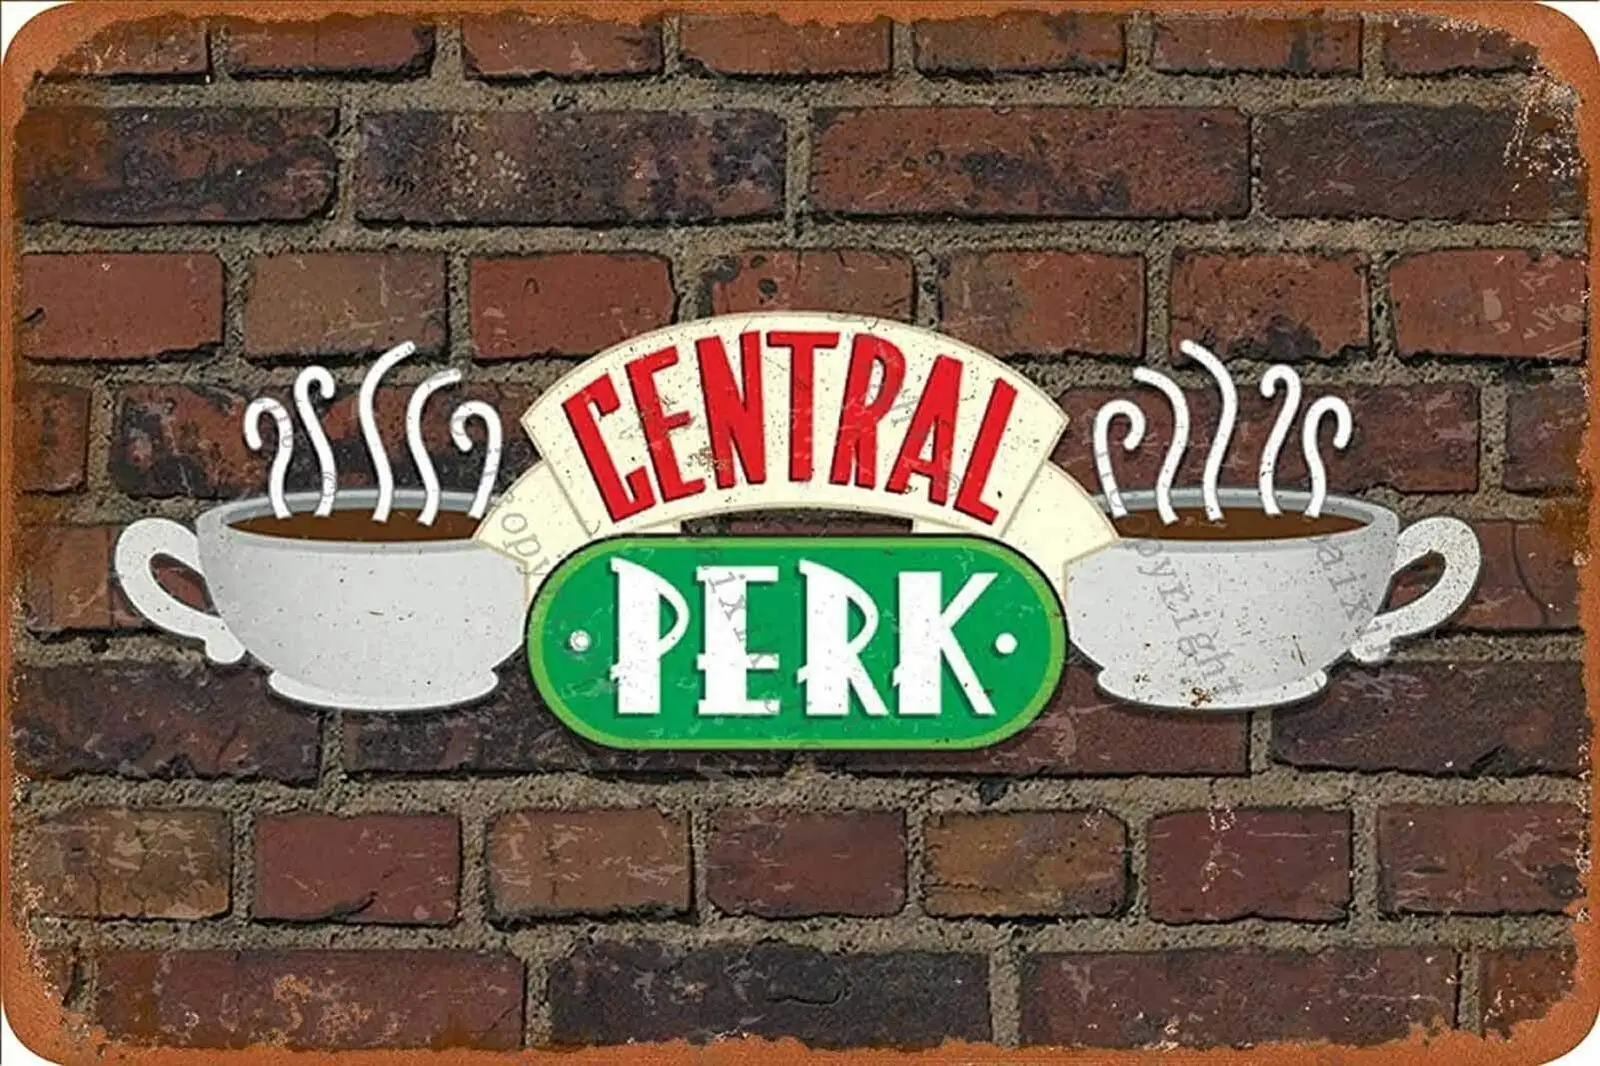 

ghostbusters Vintage Central Perk Retro Tin Sign Poster Plaque Wall Decor for Bar Cafe Garden